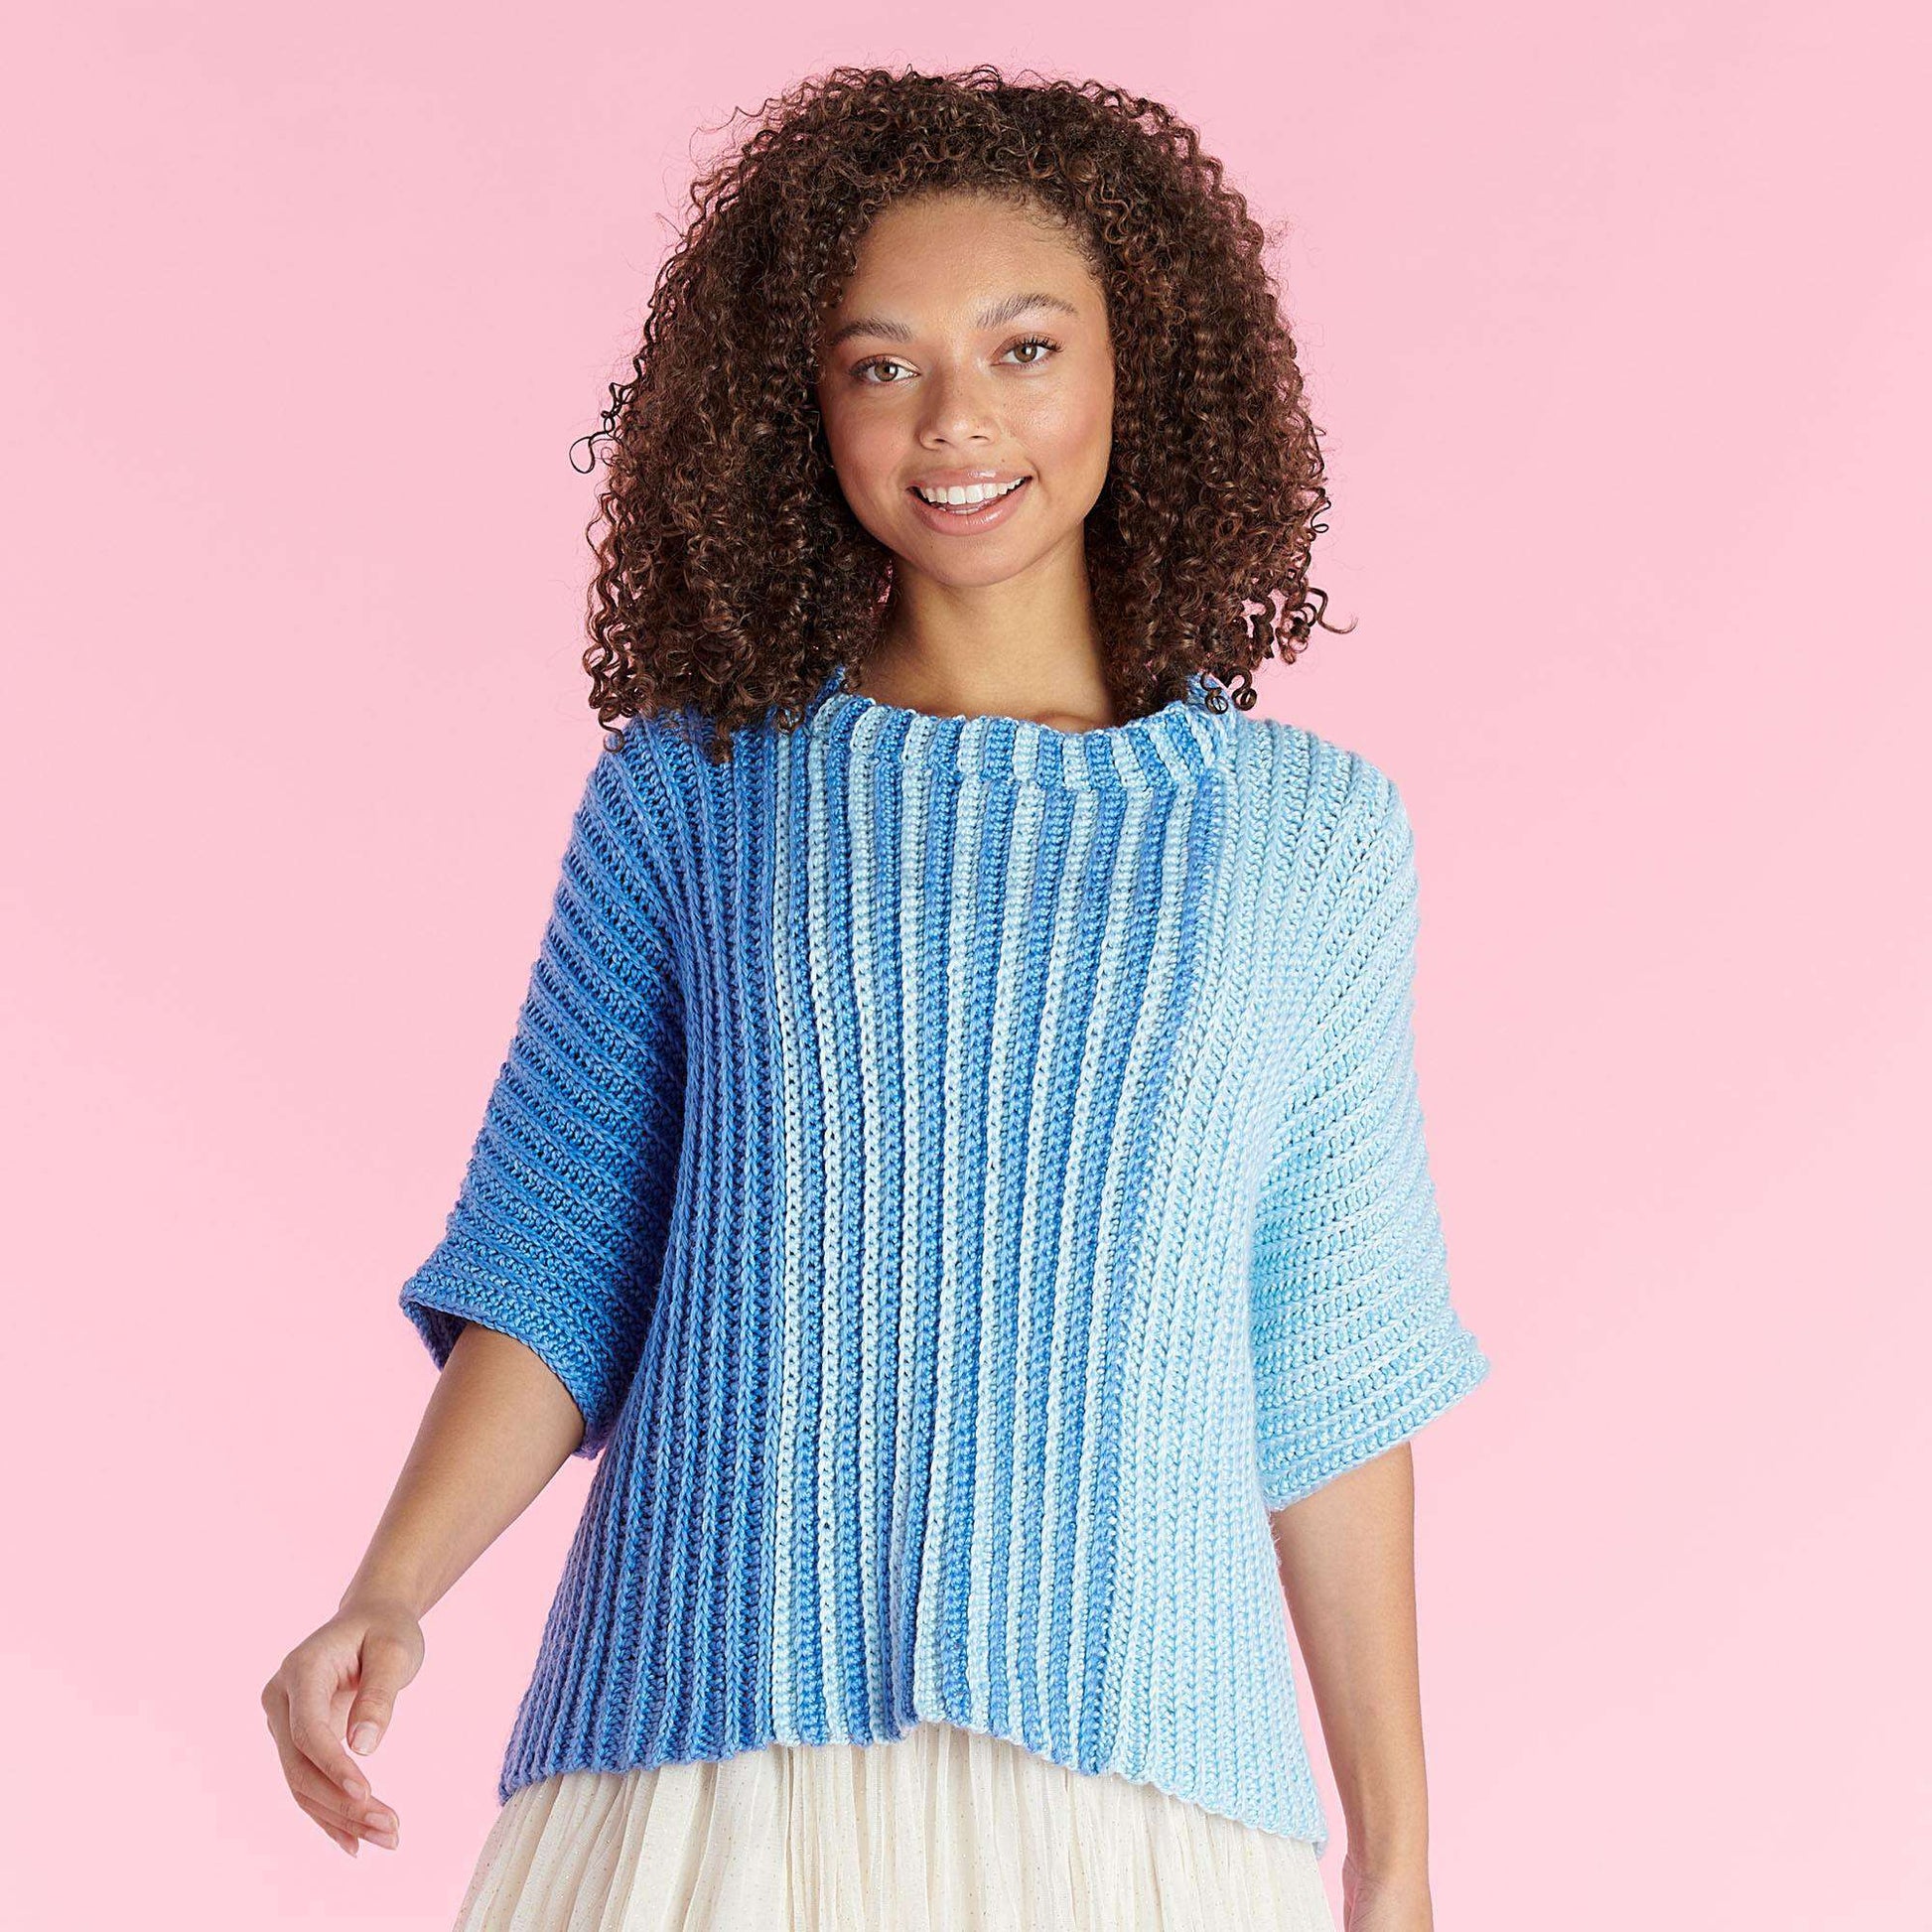 Free Caron Side-to-Side Crochet Top Pattern